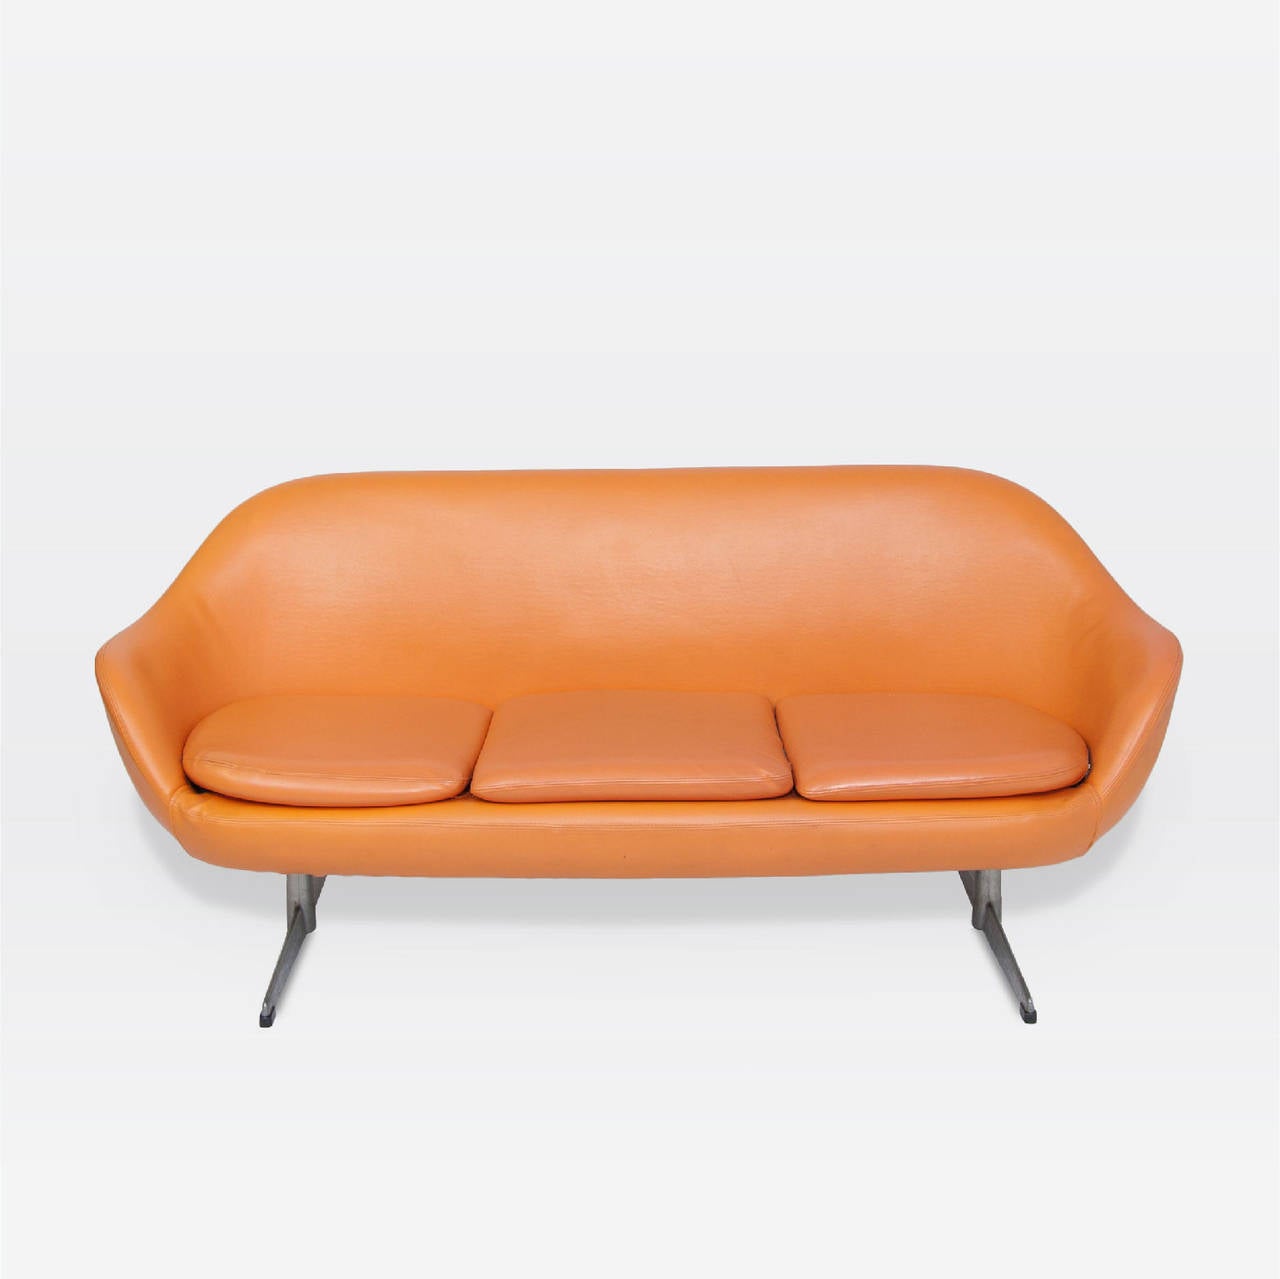 Roto three cushion orange vinyl upholstered sofa. Brushed aluminum legs.